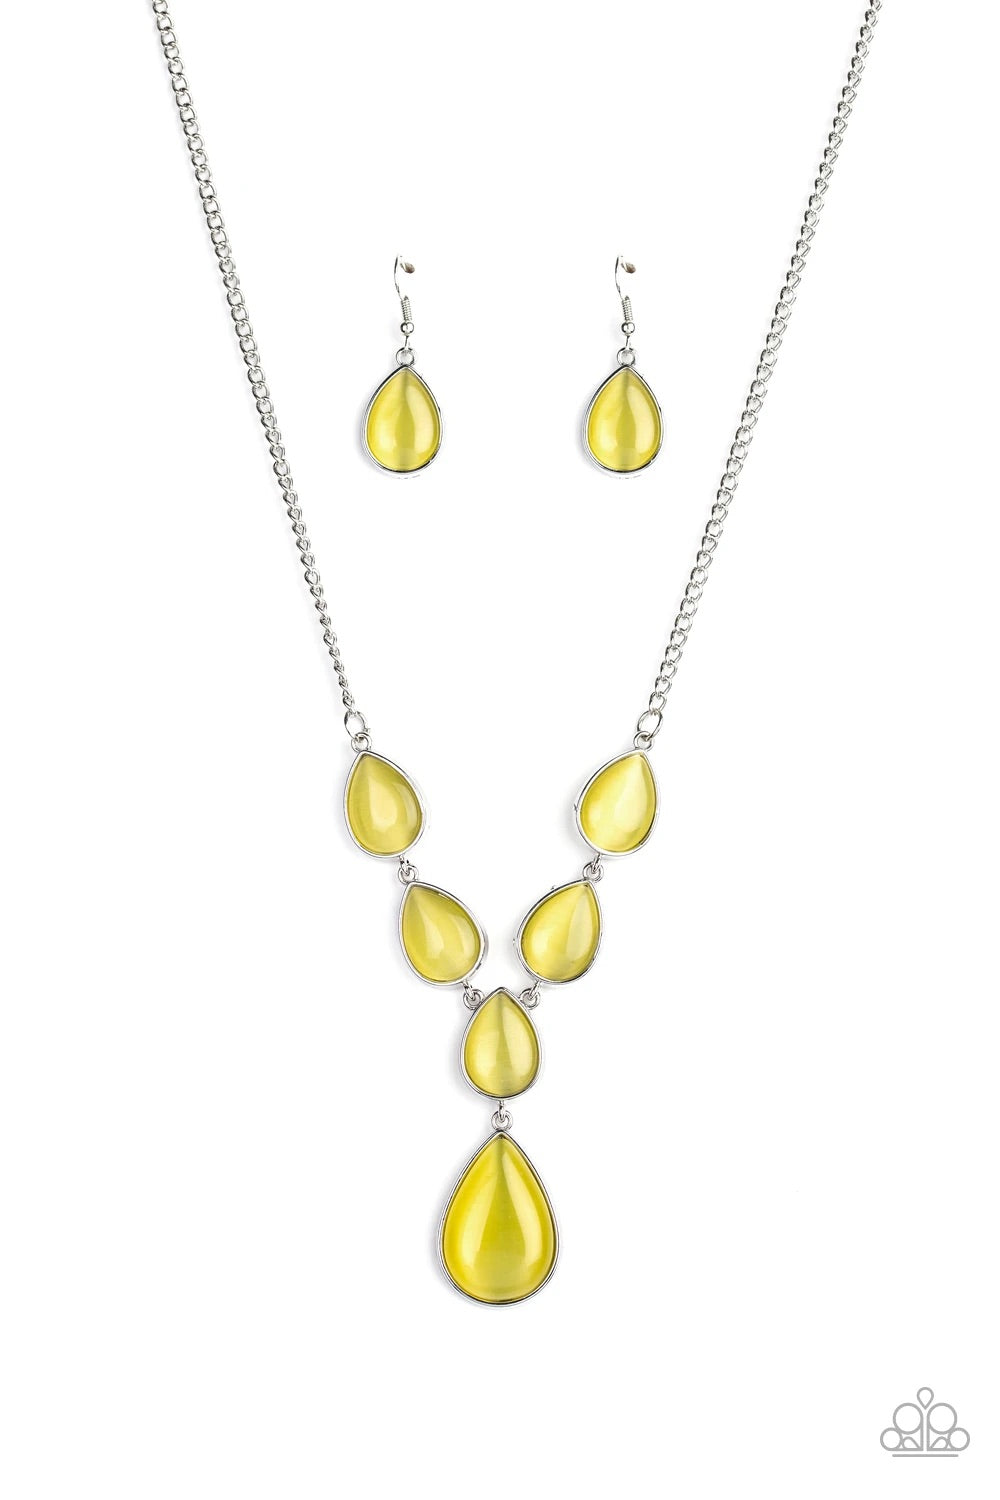 Dewy Decadence Yellow Necklace freeshipping - JewLz4u Gemstone Gallery